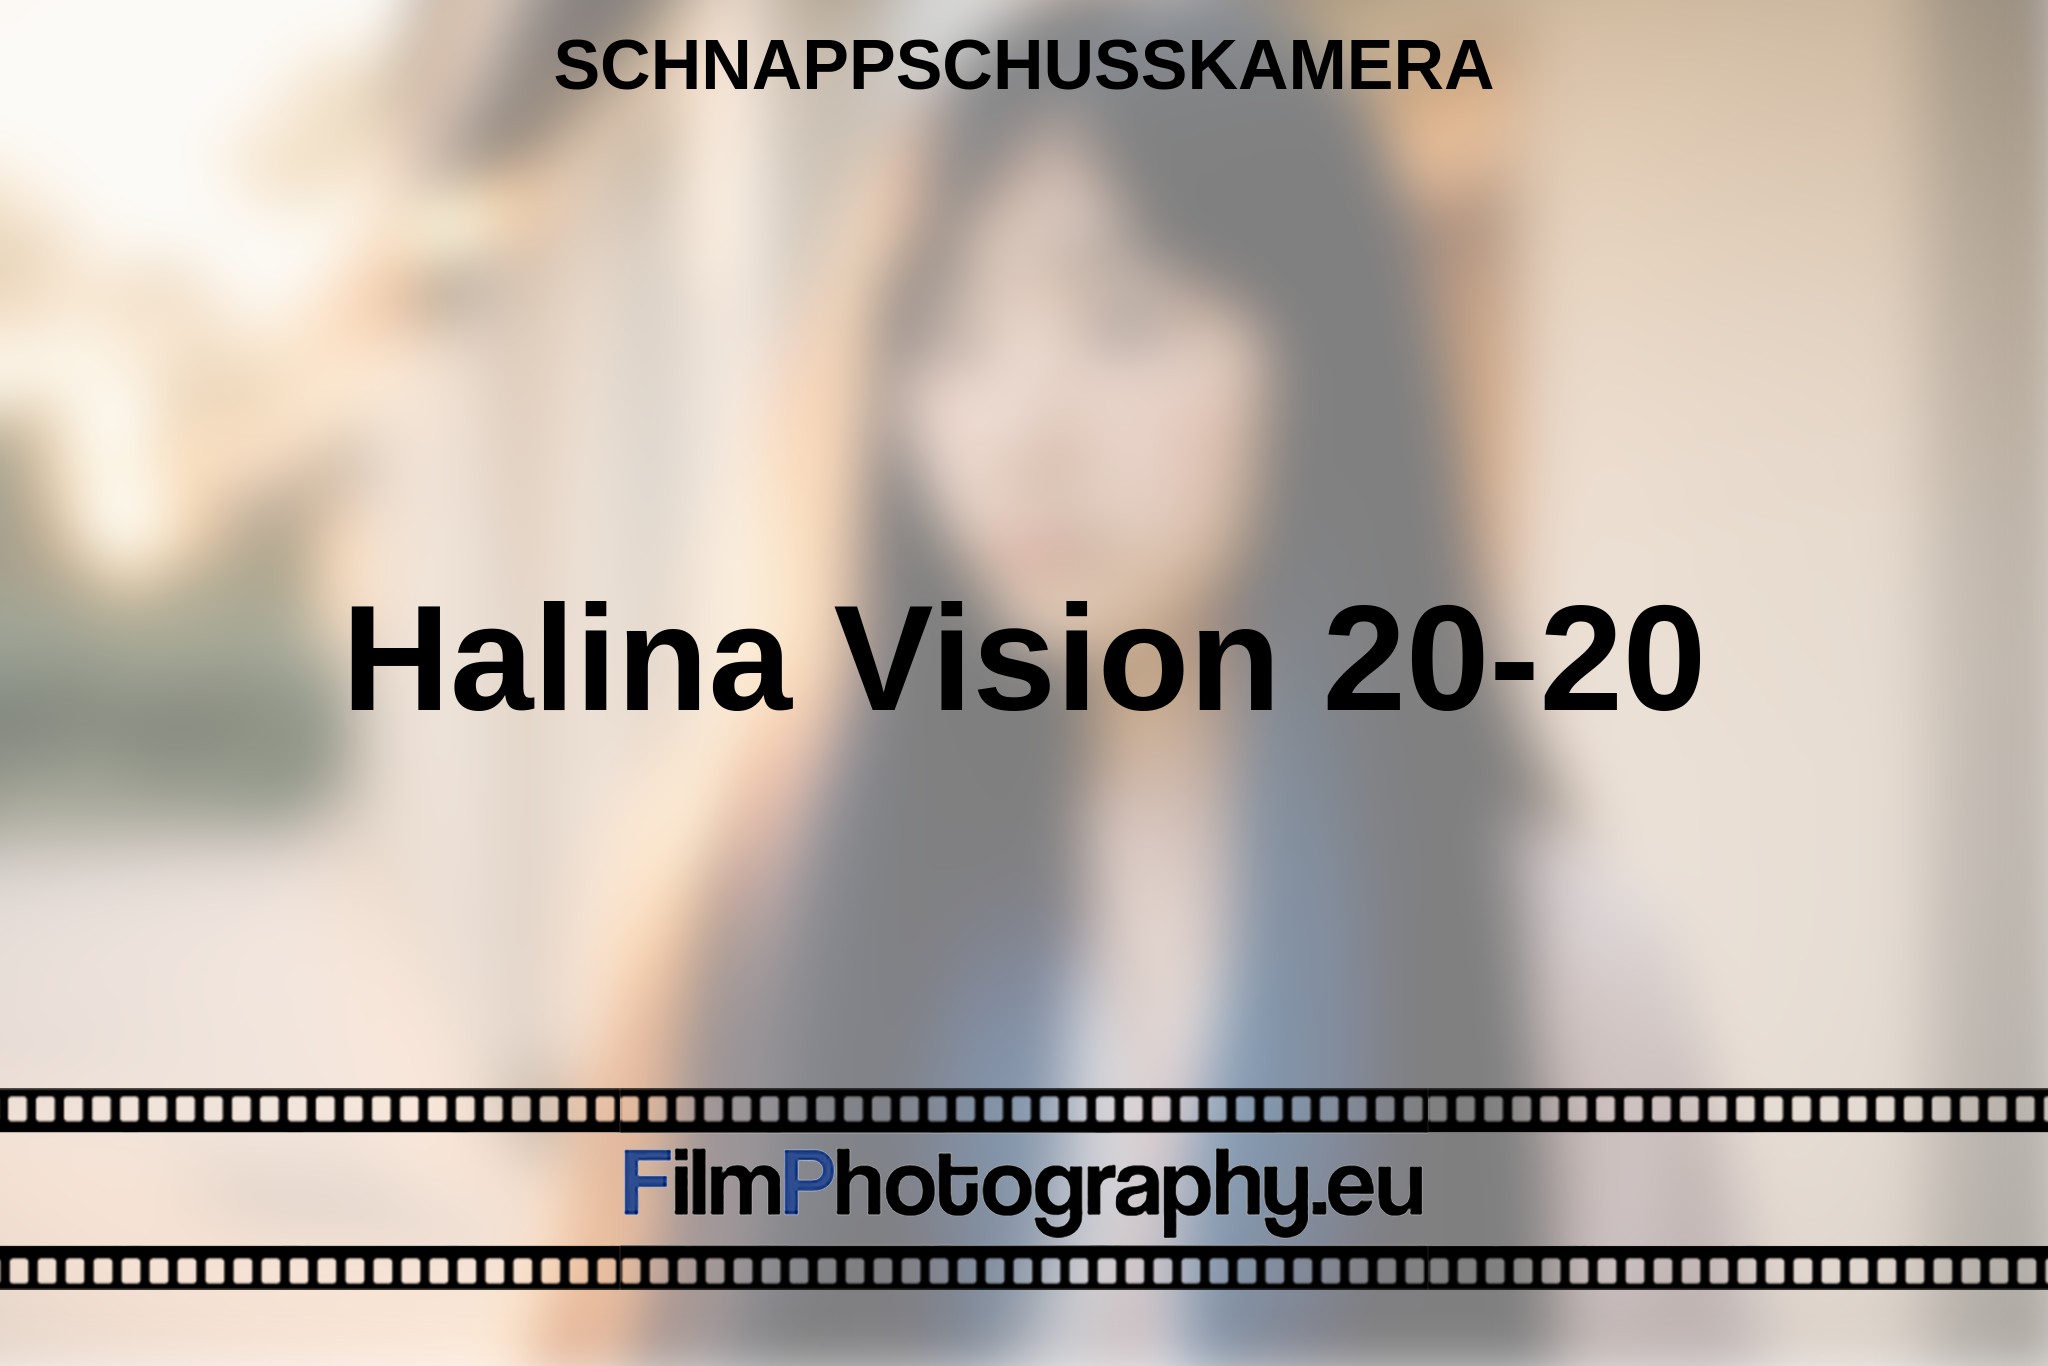 halina-vision-20-20-schnappschusskamera-bnv.jpg